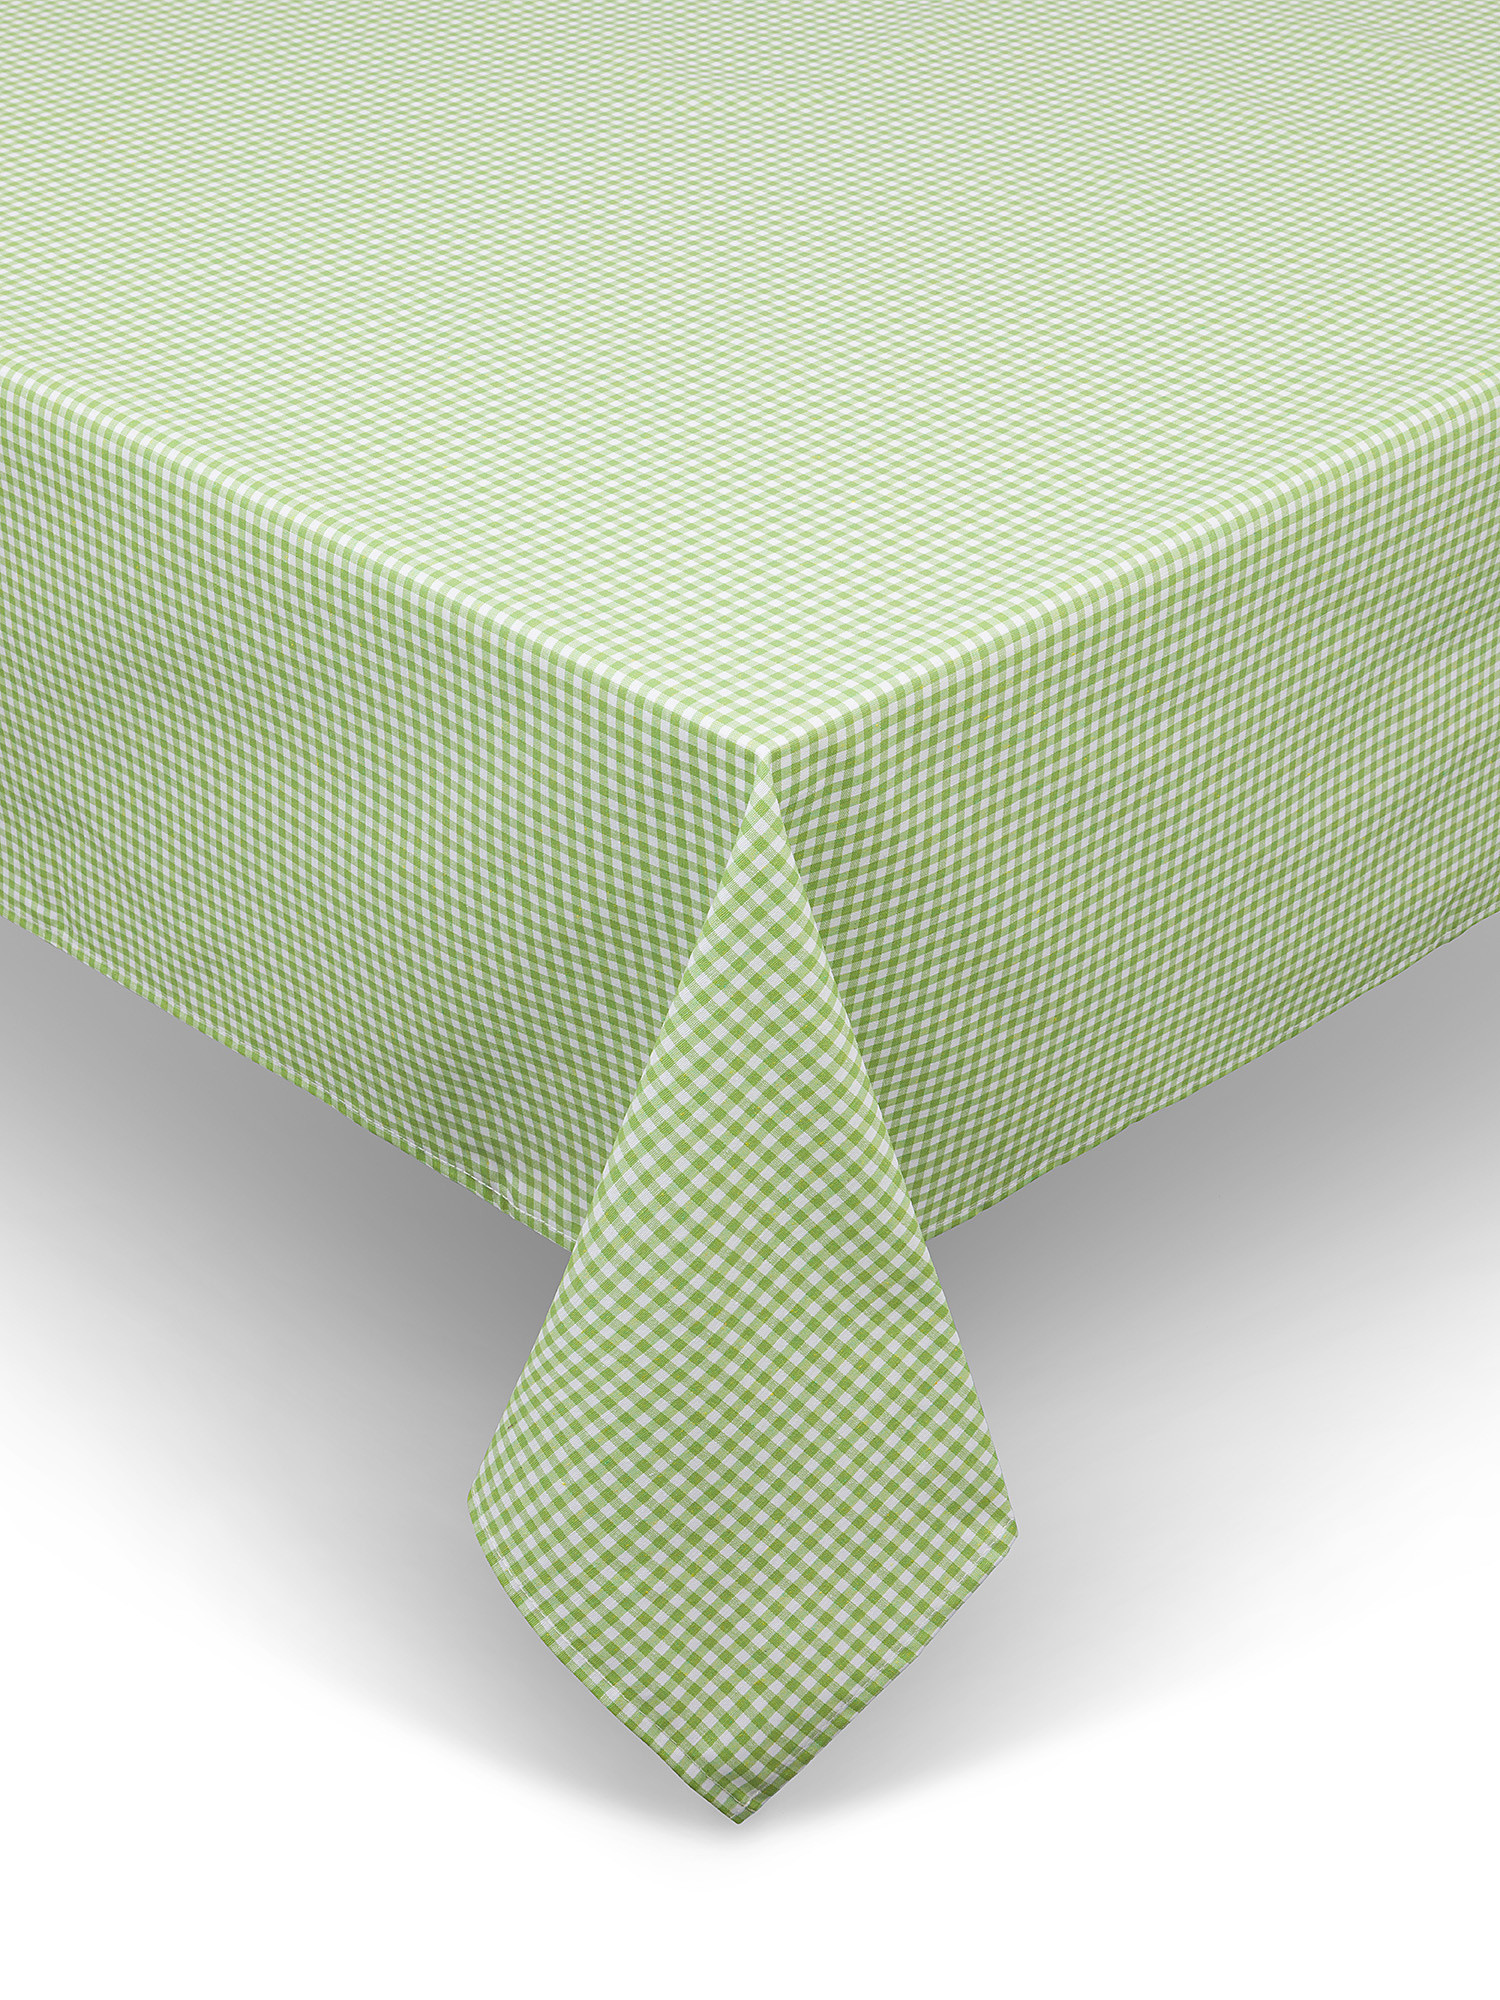 Tovaglia cotone idrorepellente motivo vichy ricamo margherite, Verde, large image number 0